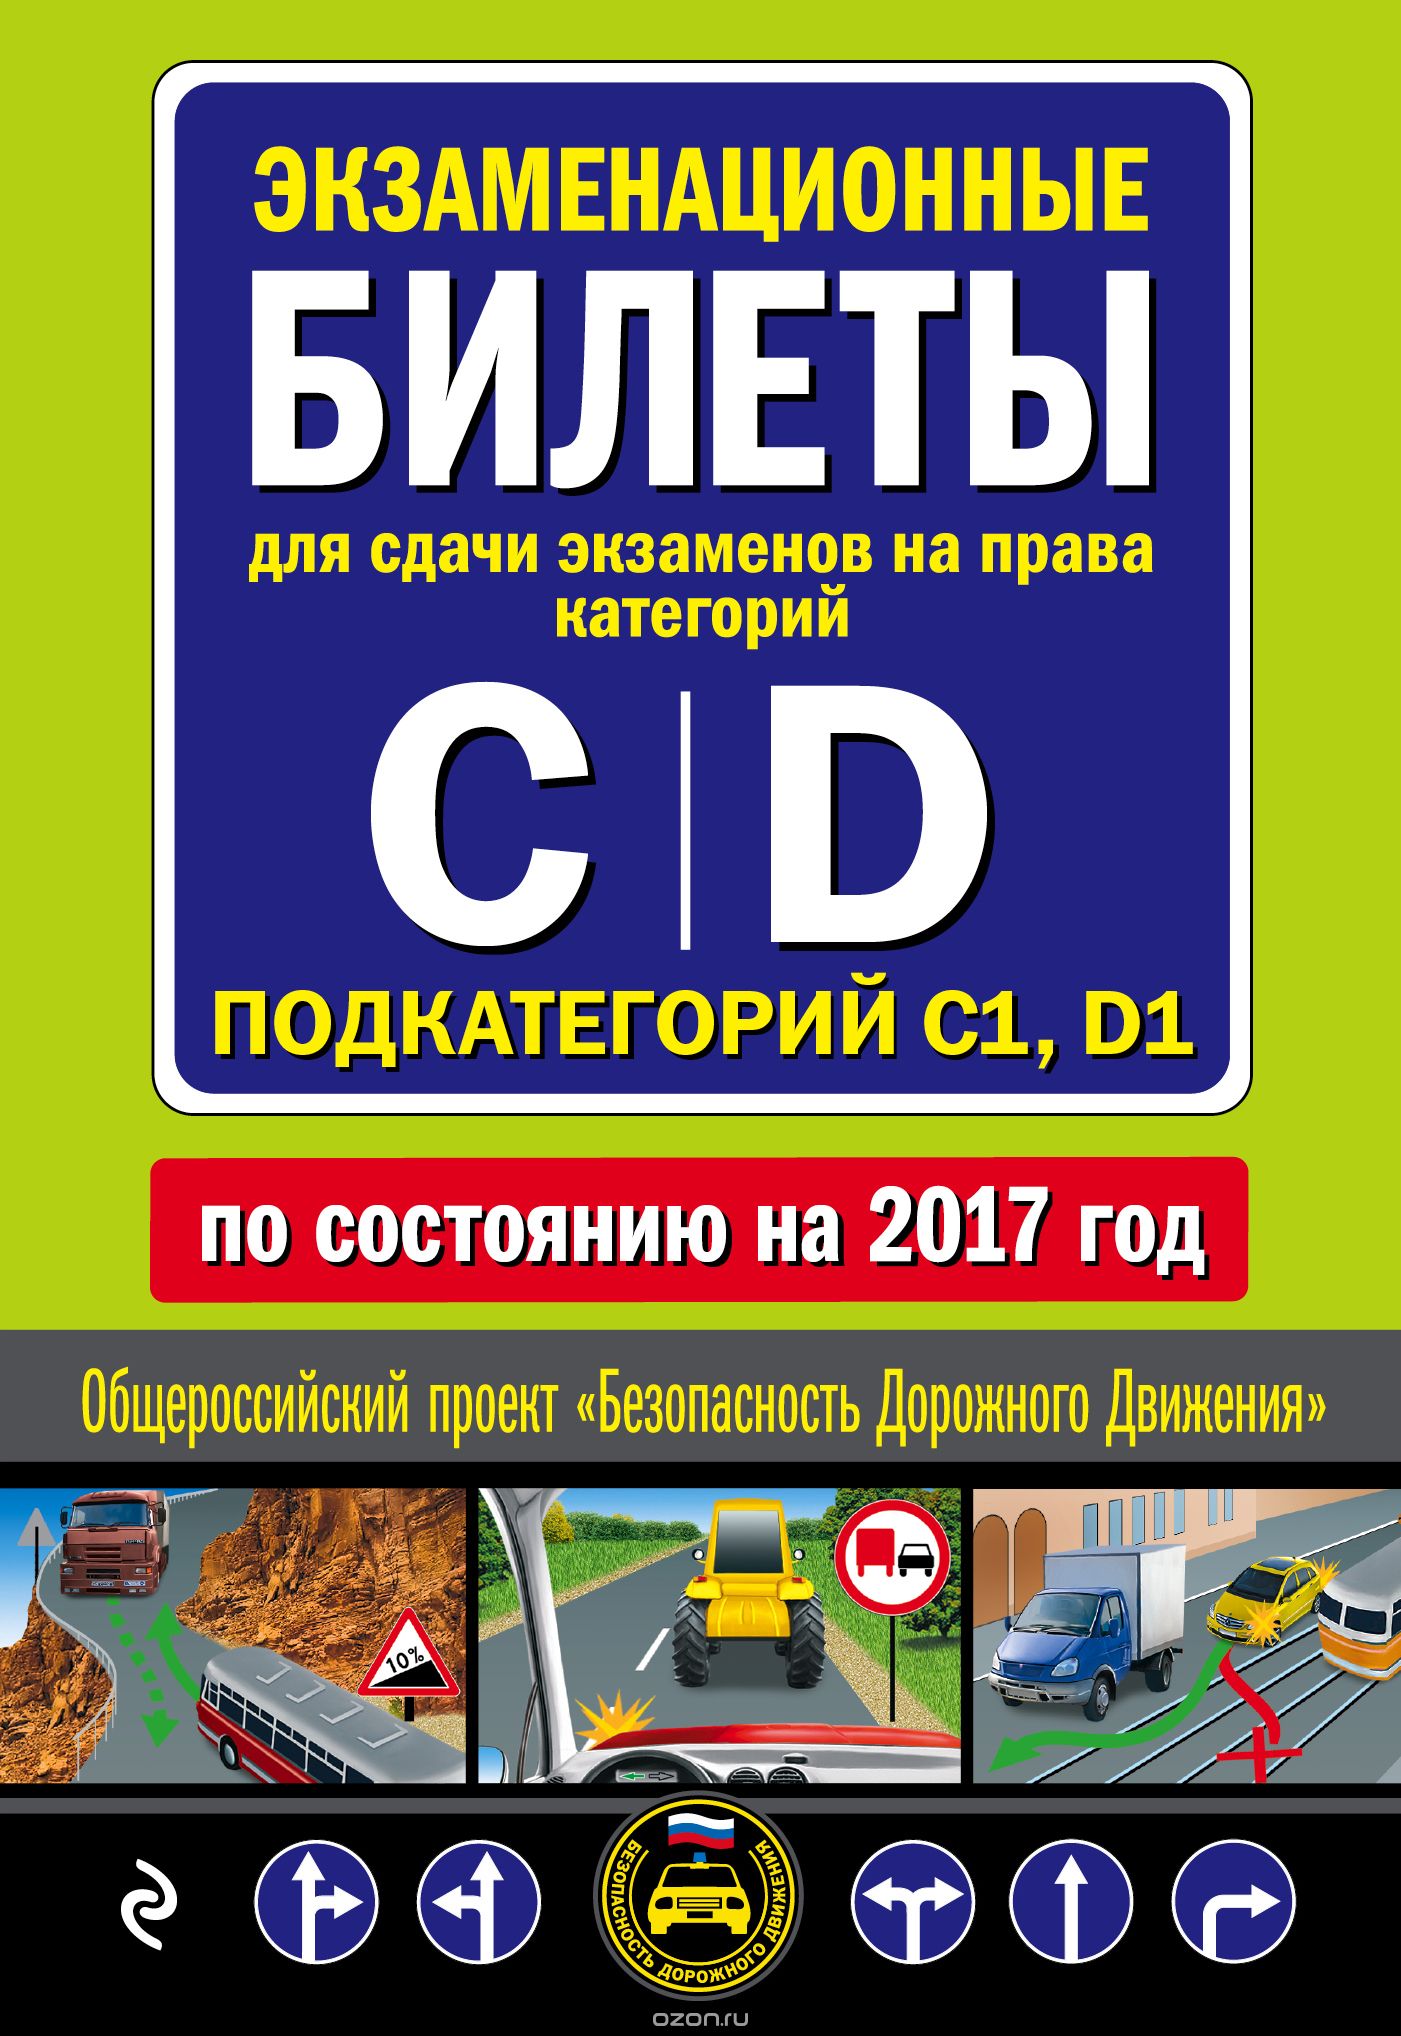 Экзаменационные билеты для сдачи экзаменов на права категорий "C", "D", подкатегорий "C1", "D1" 2017